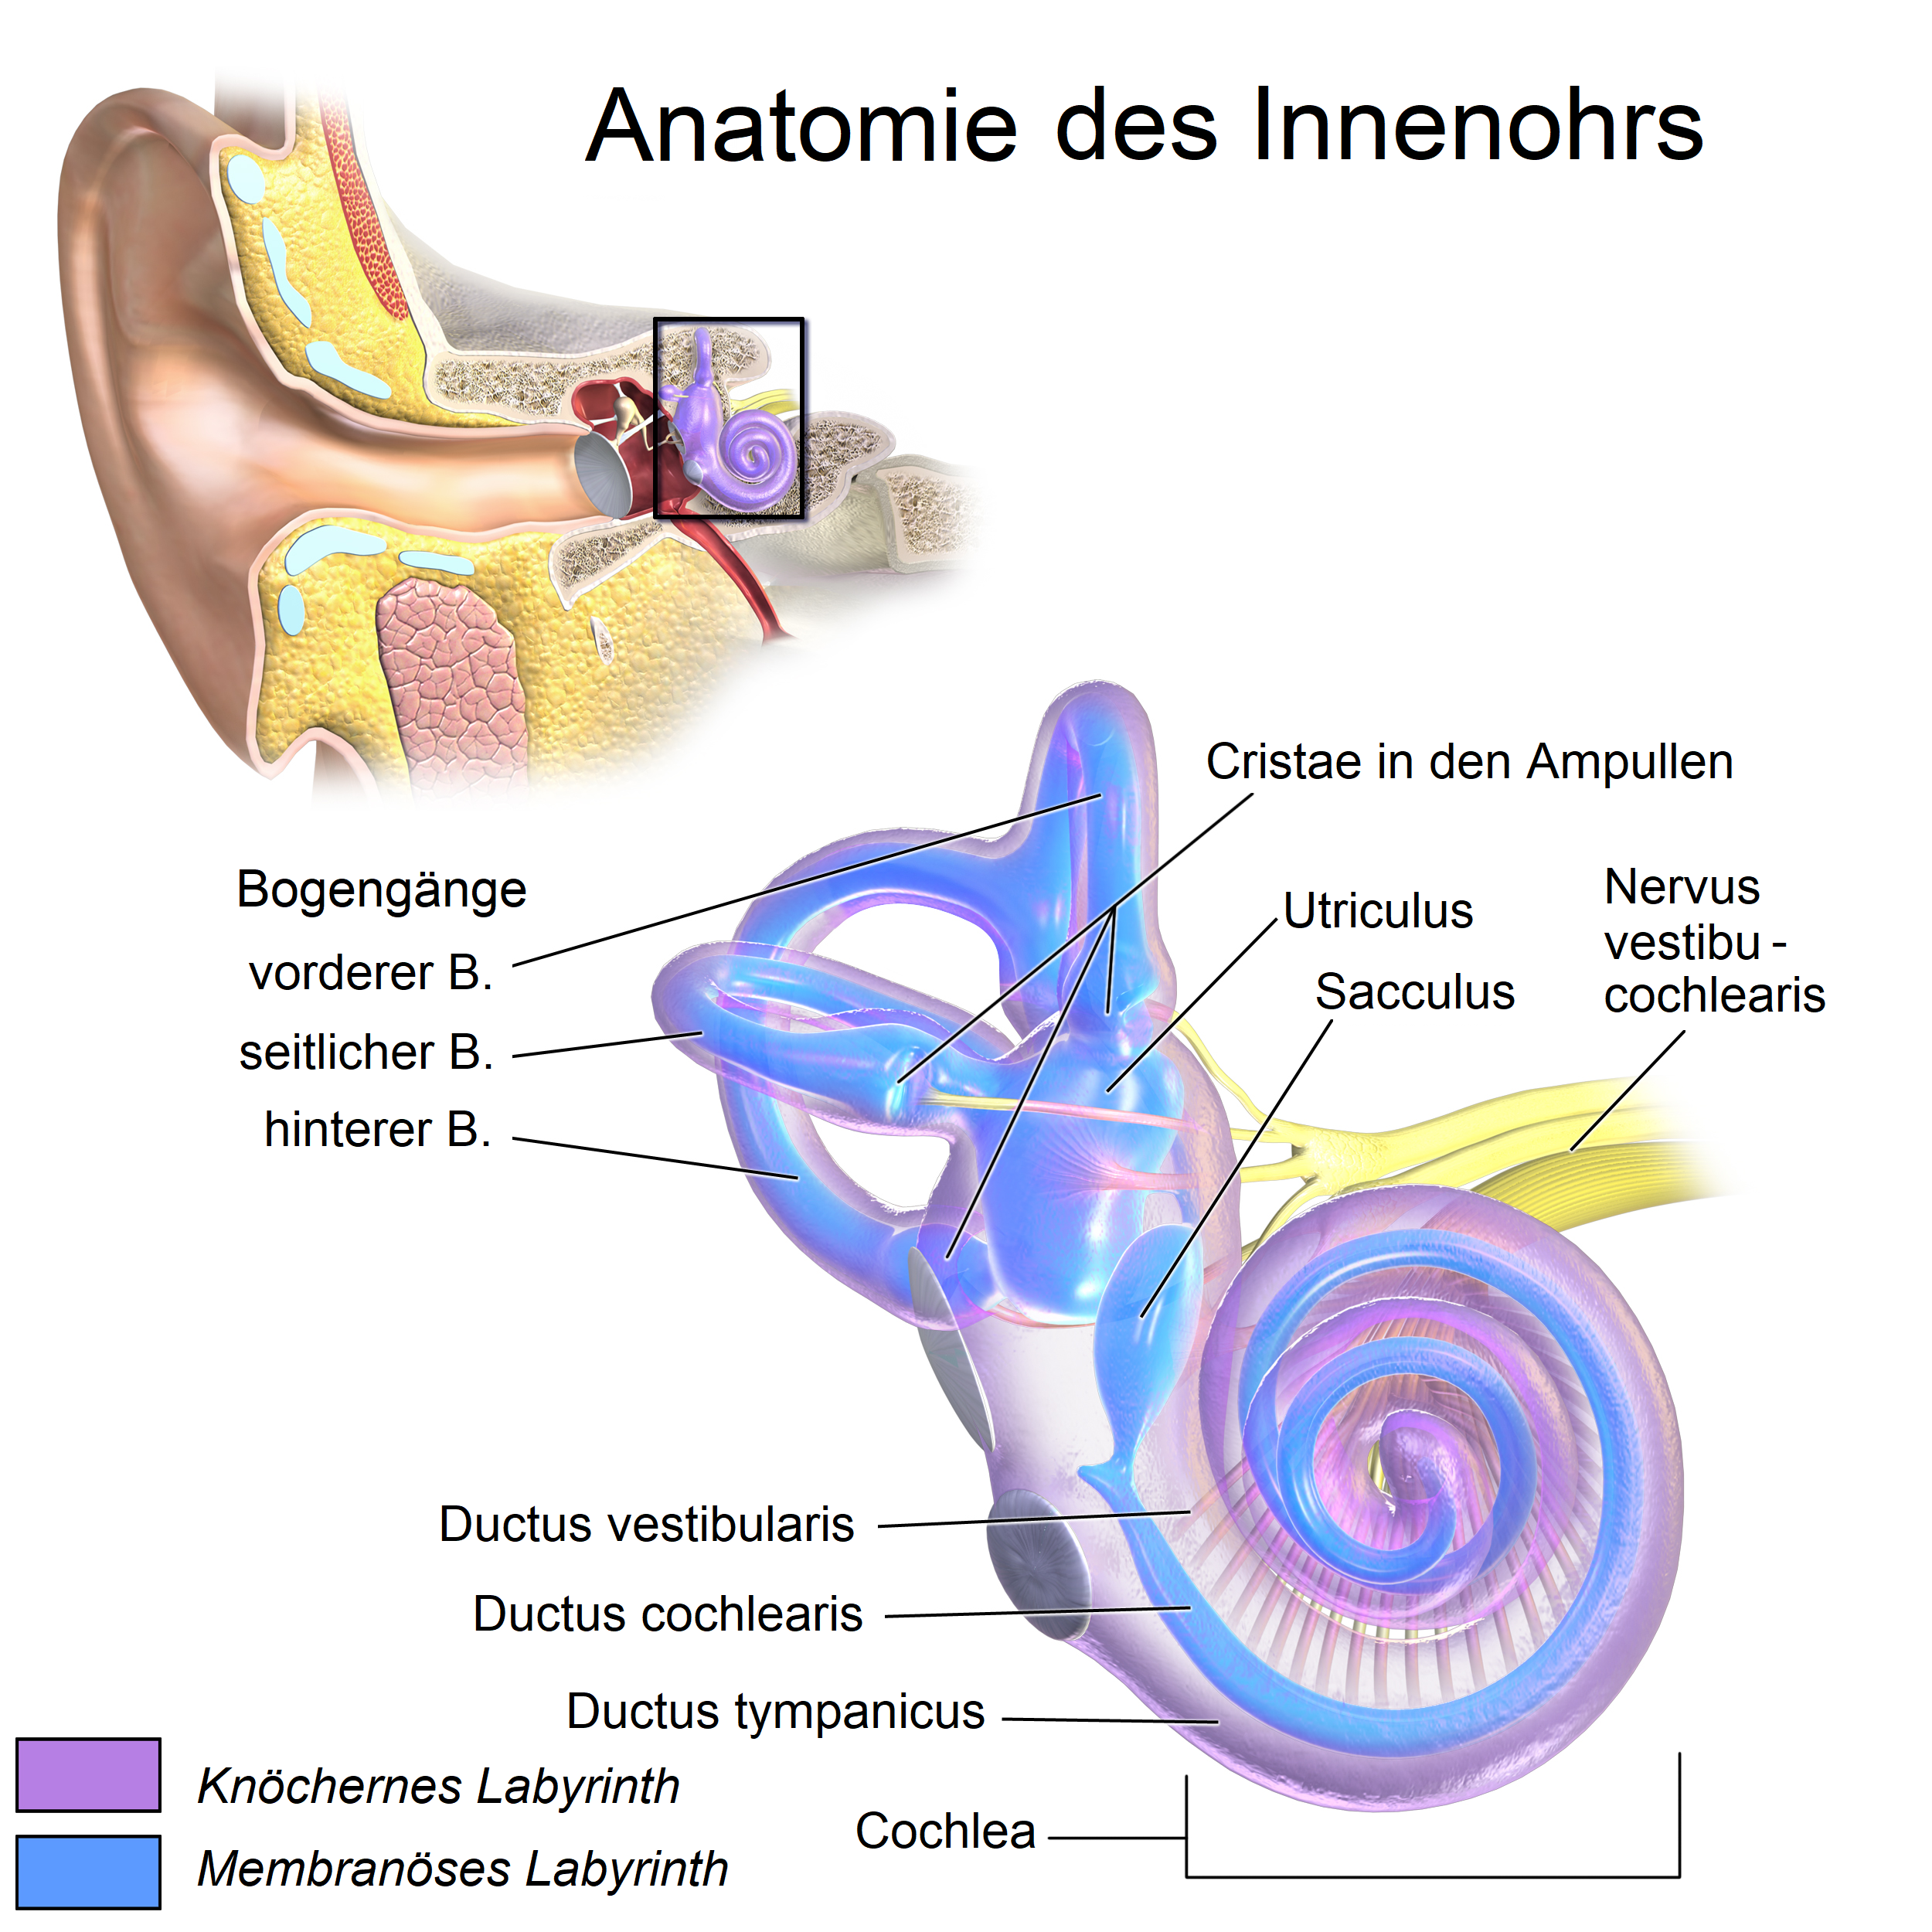 Anatomie des Innenohrs